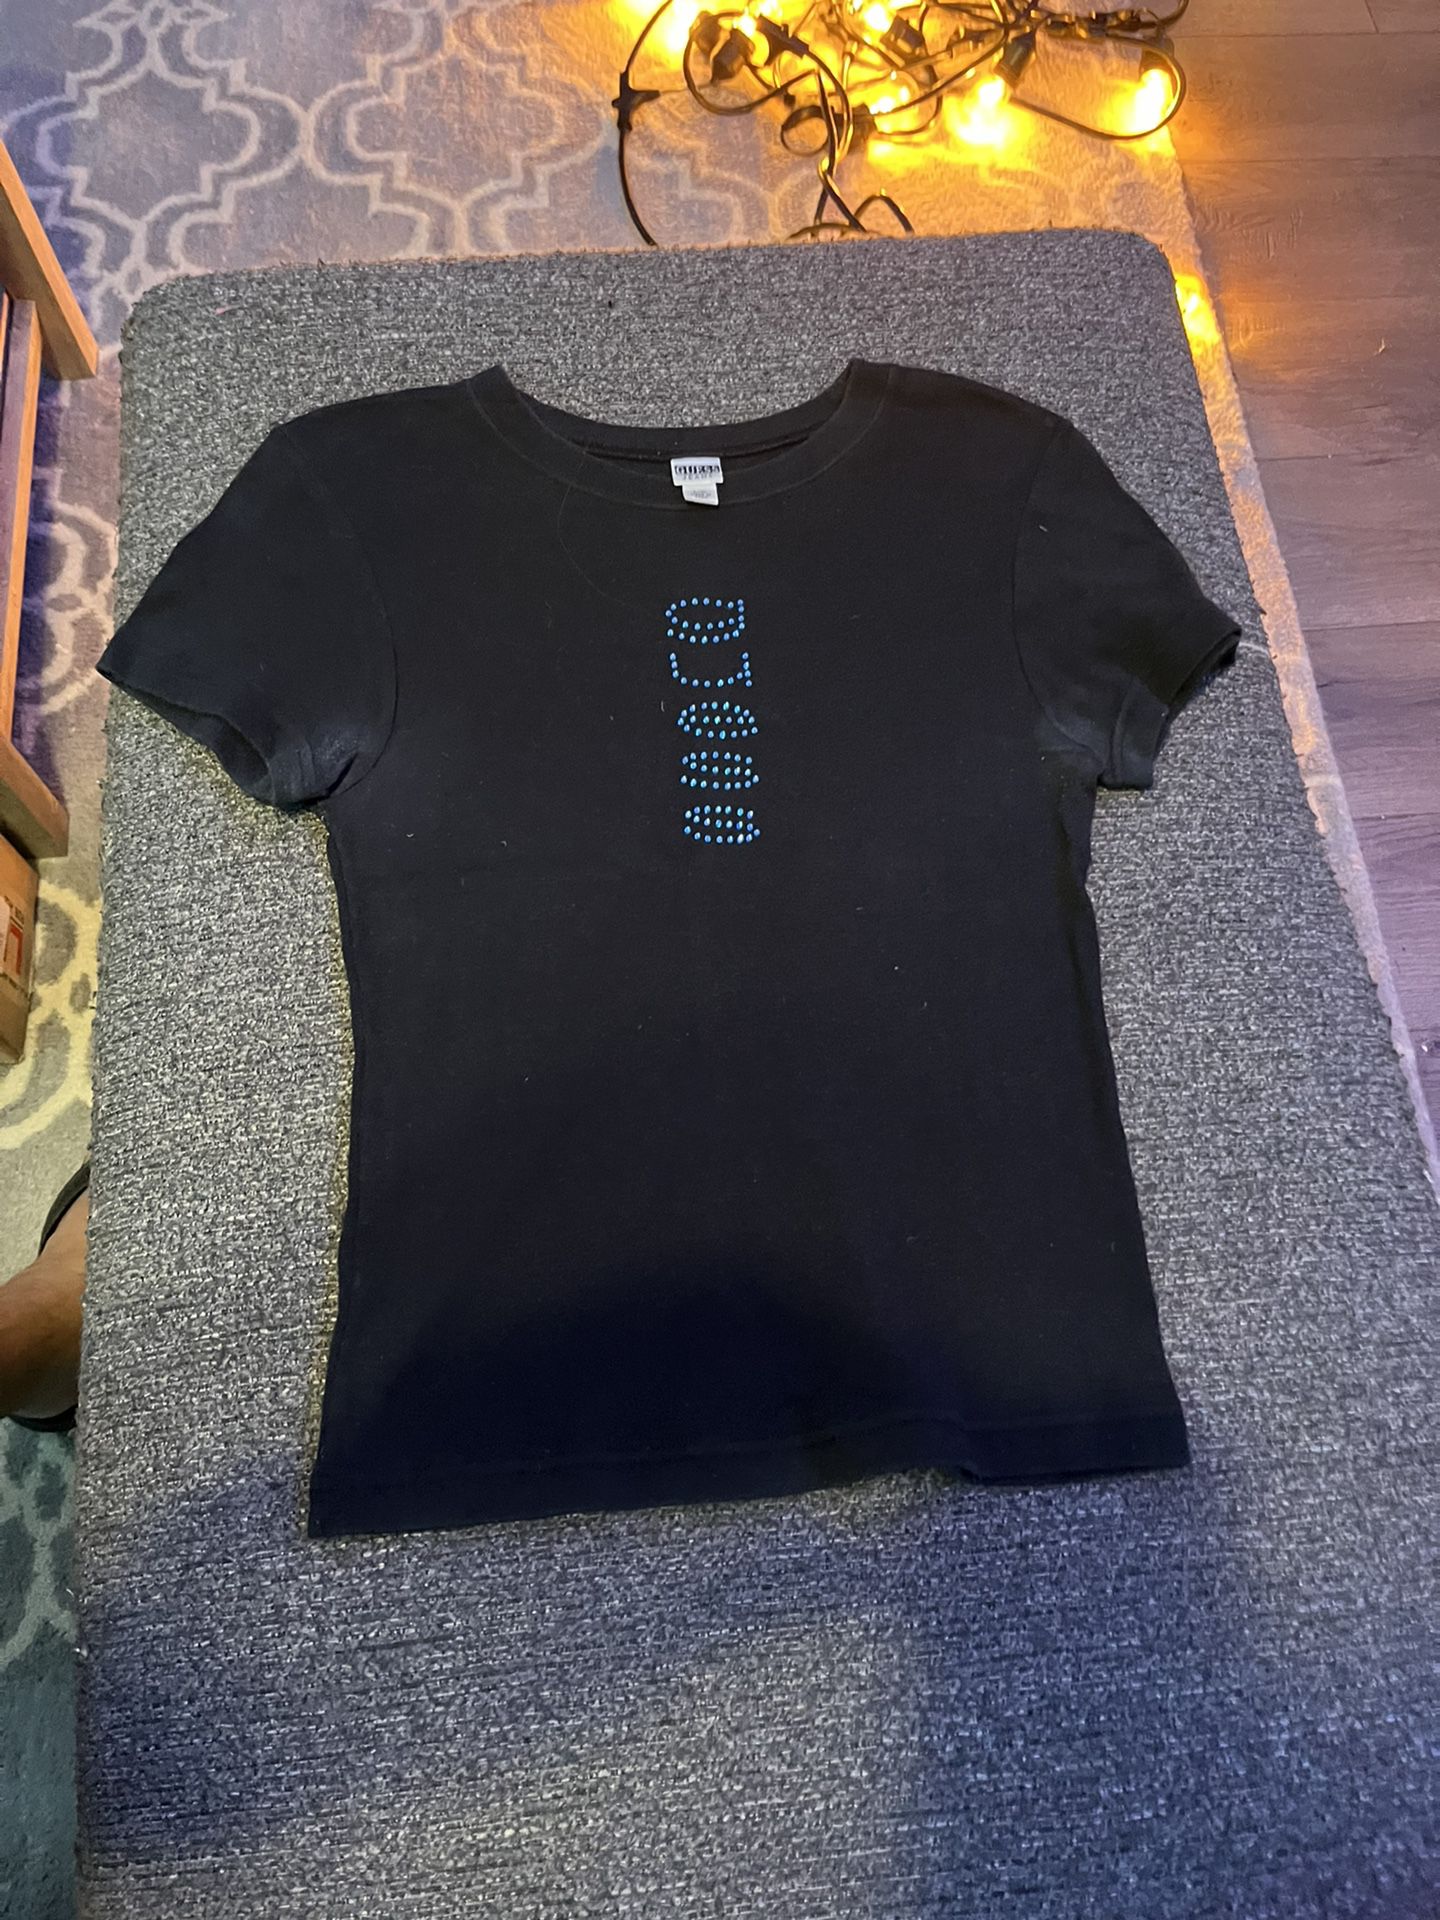 Guess/Ralph Lauren Women’s Shirts